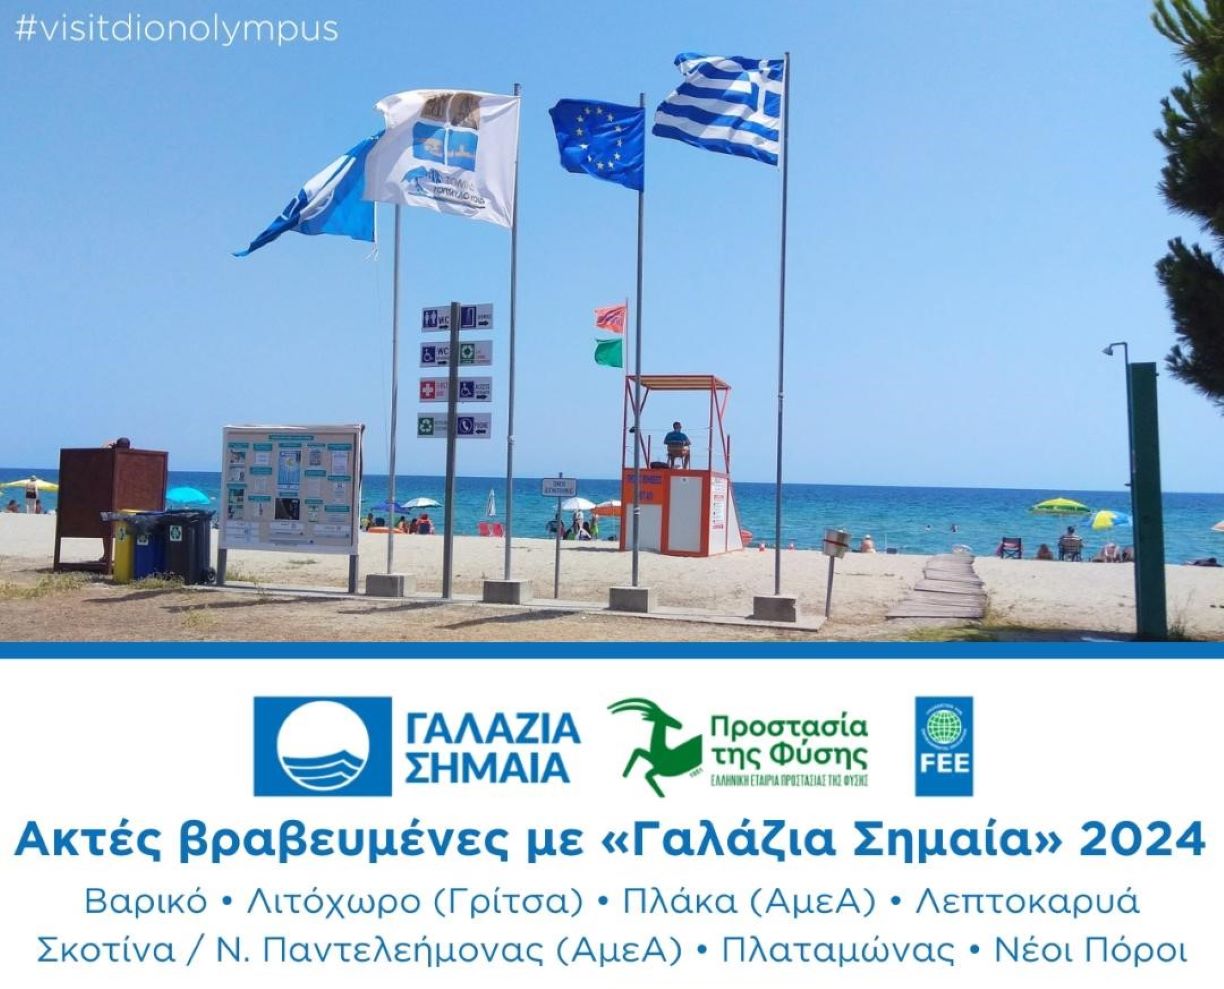 Επτά ακτές του Δήμου Δίου -Ολύμπου με “Γαλάζιες Σημαίες”